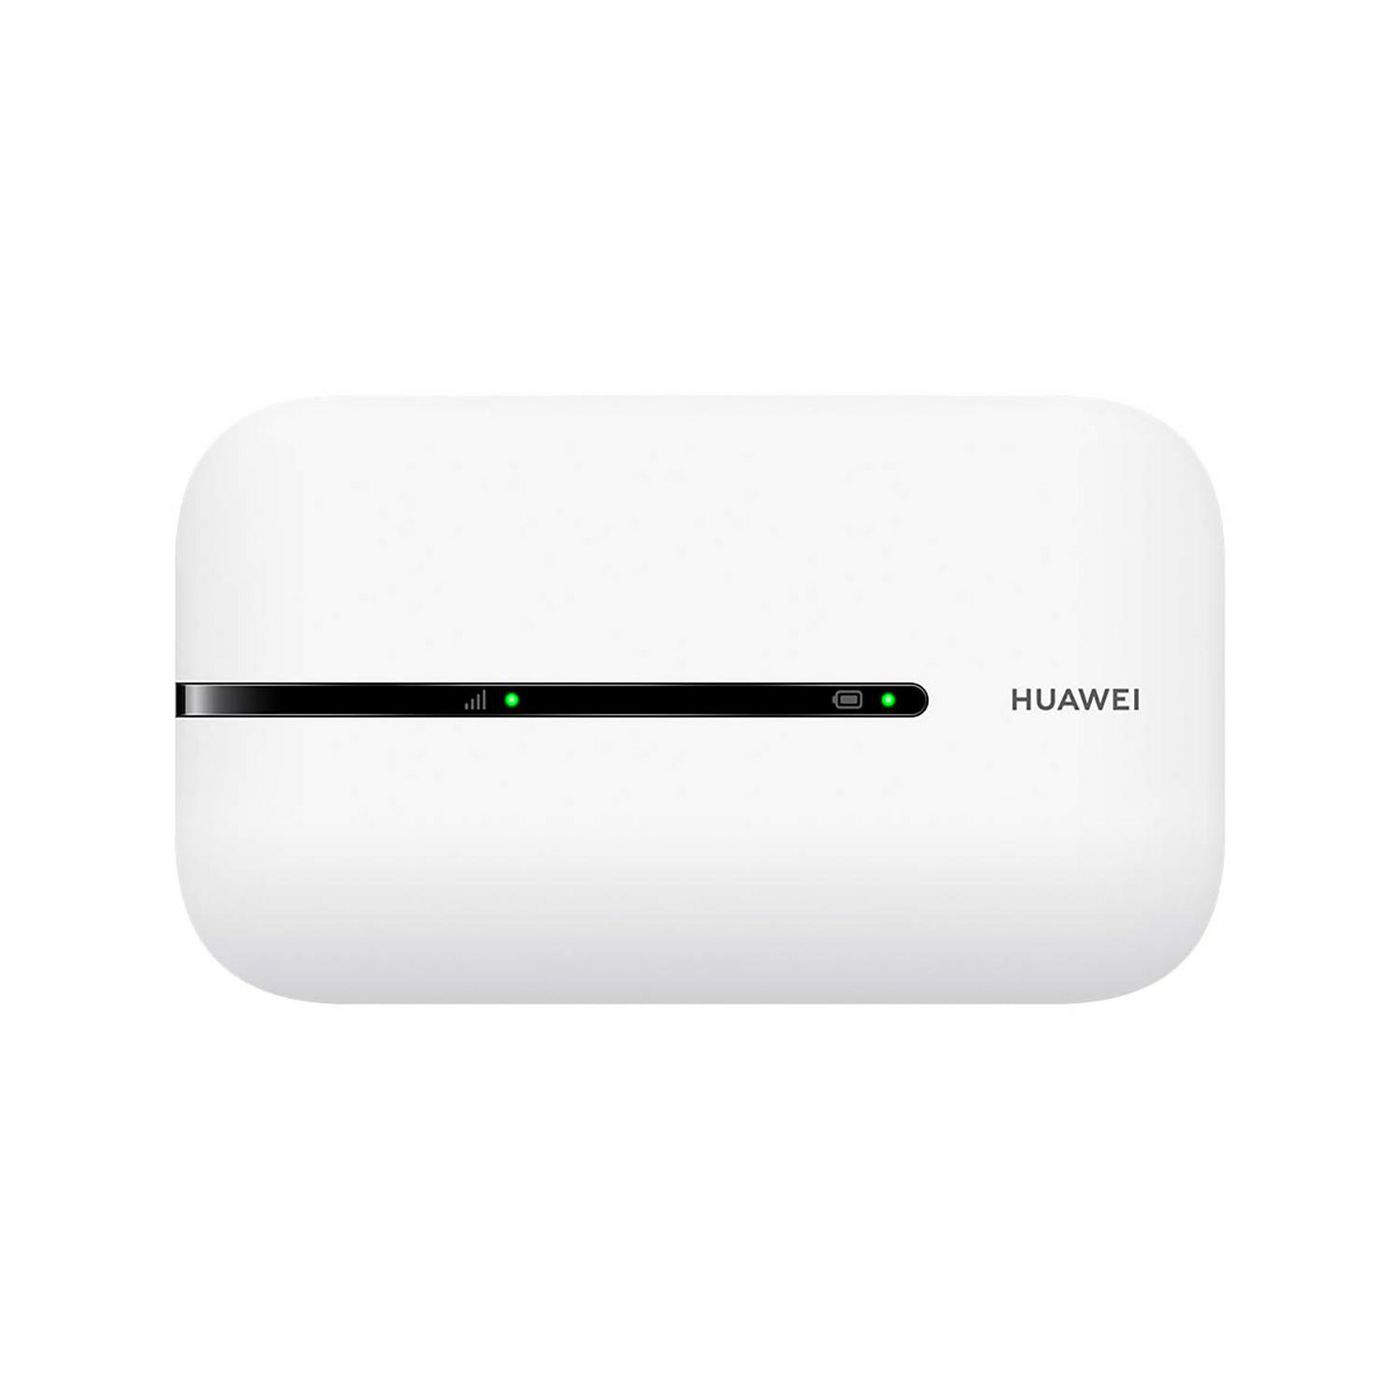 HUAWEI E5576-320 mobiler LTE Hotspot weiss